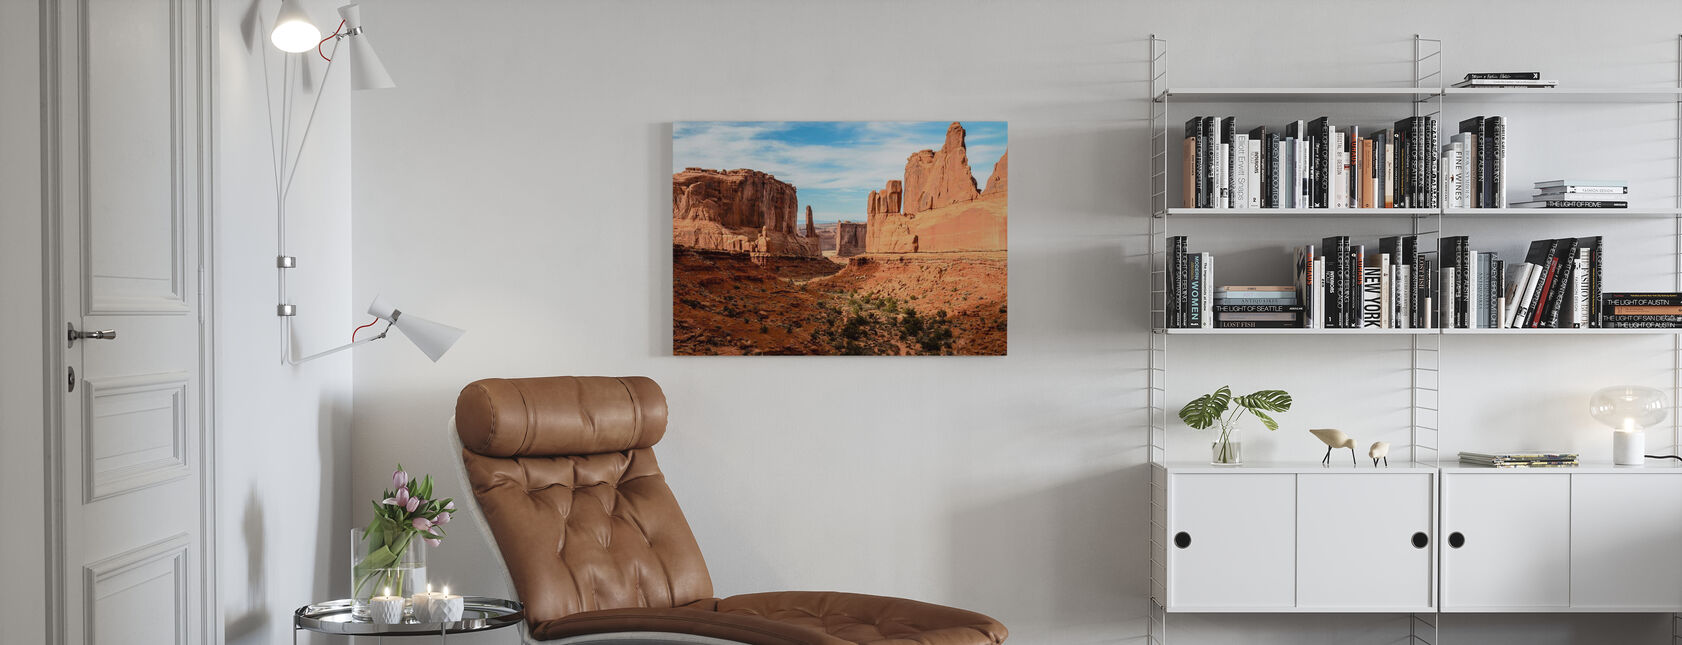 Park Avenue, Arches National Park - Canvas print - Living Room